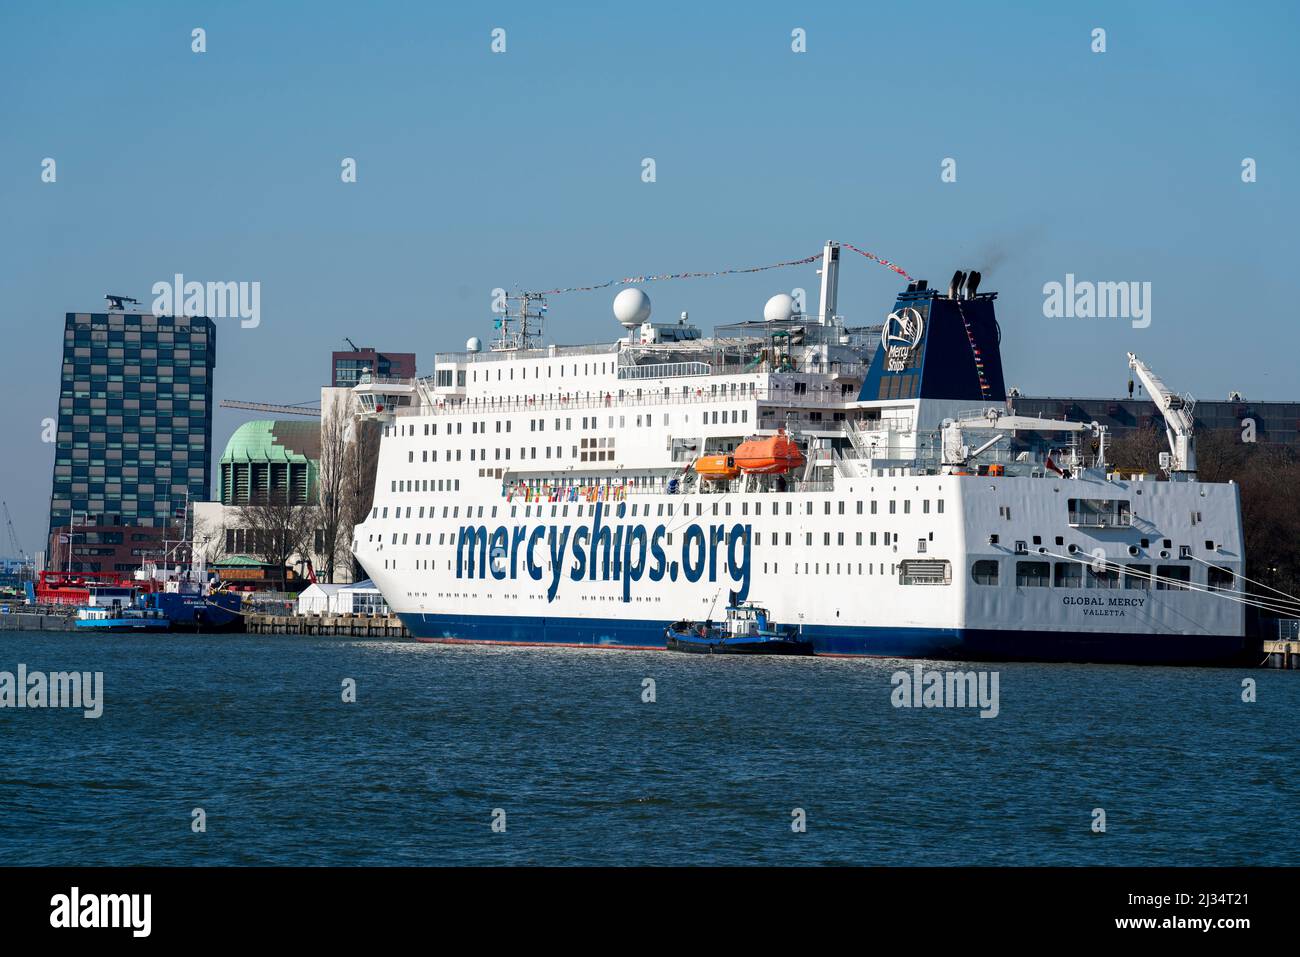 Le Global Mercy, navire-hôpital de l'organisation de secours Mercy Ships, c'est le plus grand navire-hôpital civil au monde, sur le Nieuwe Banque D'Images